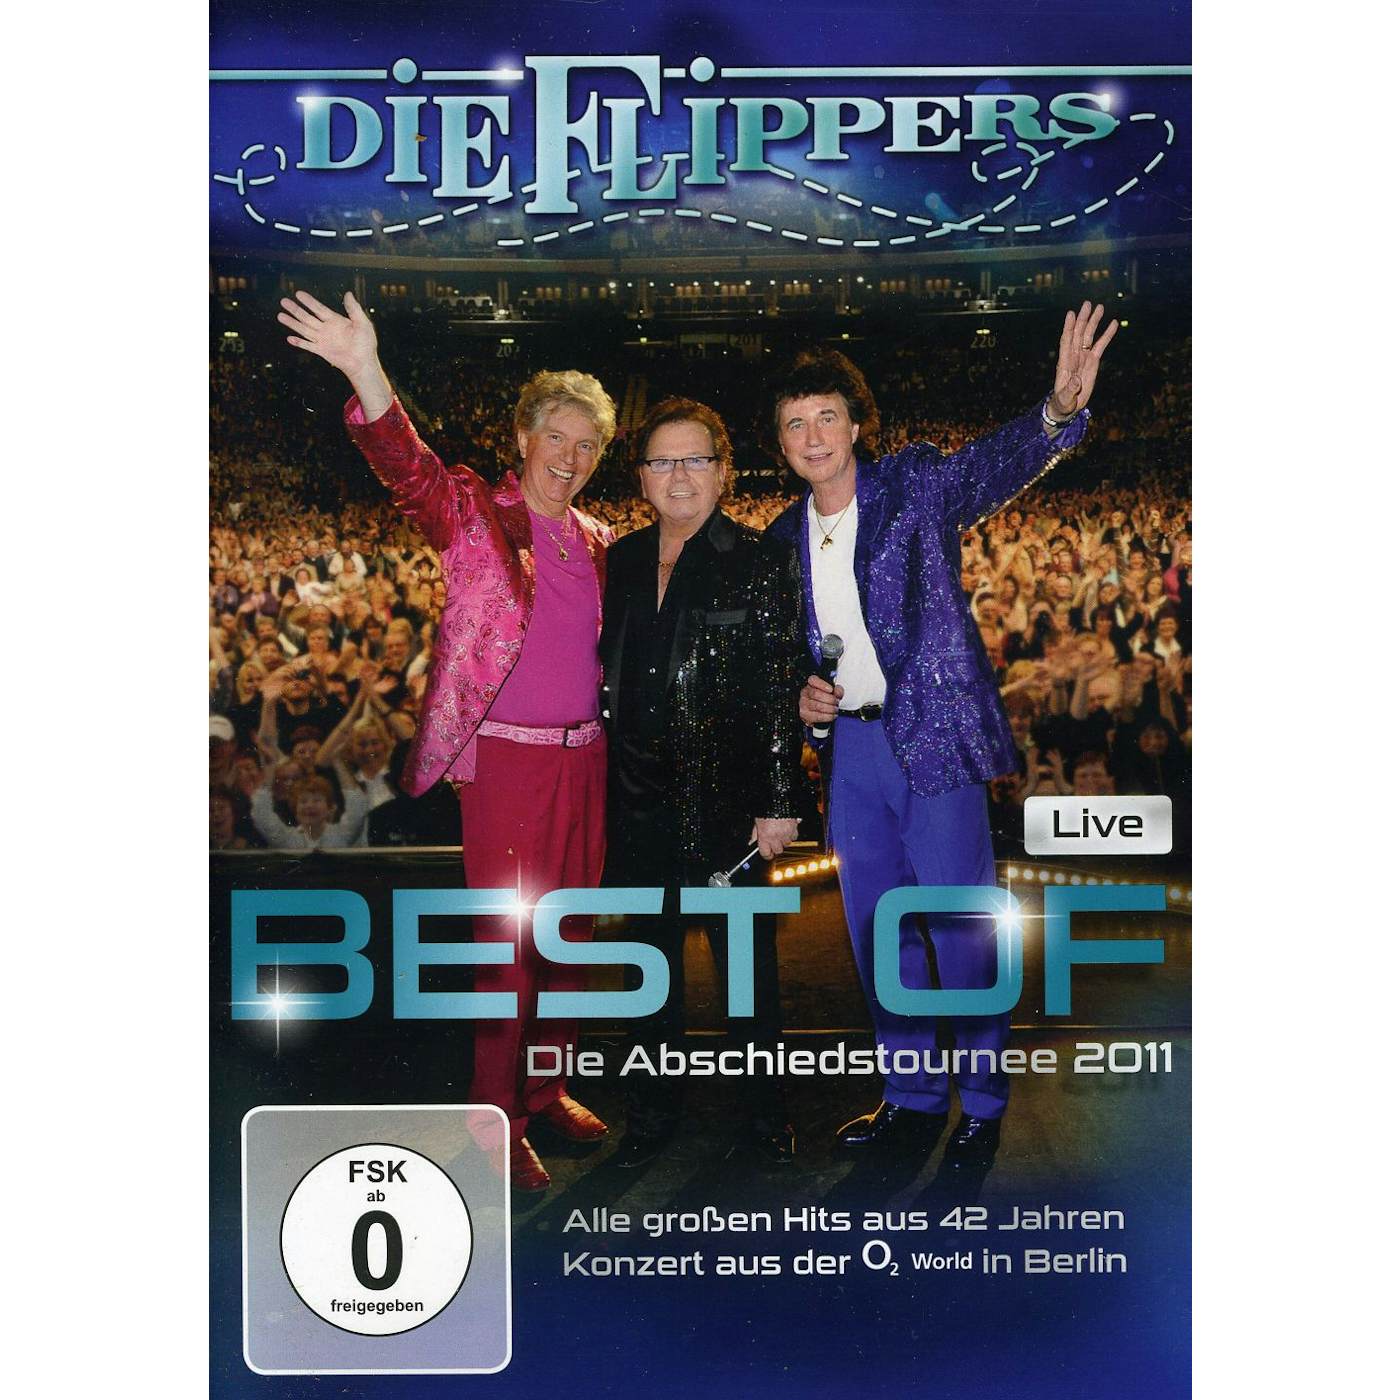 Die Flippers BEST OF LIVE DVD